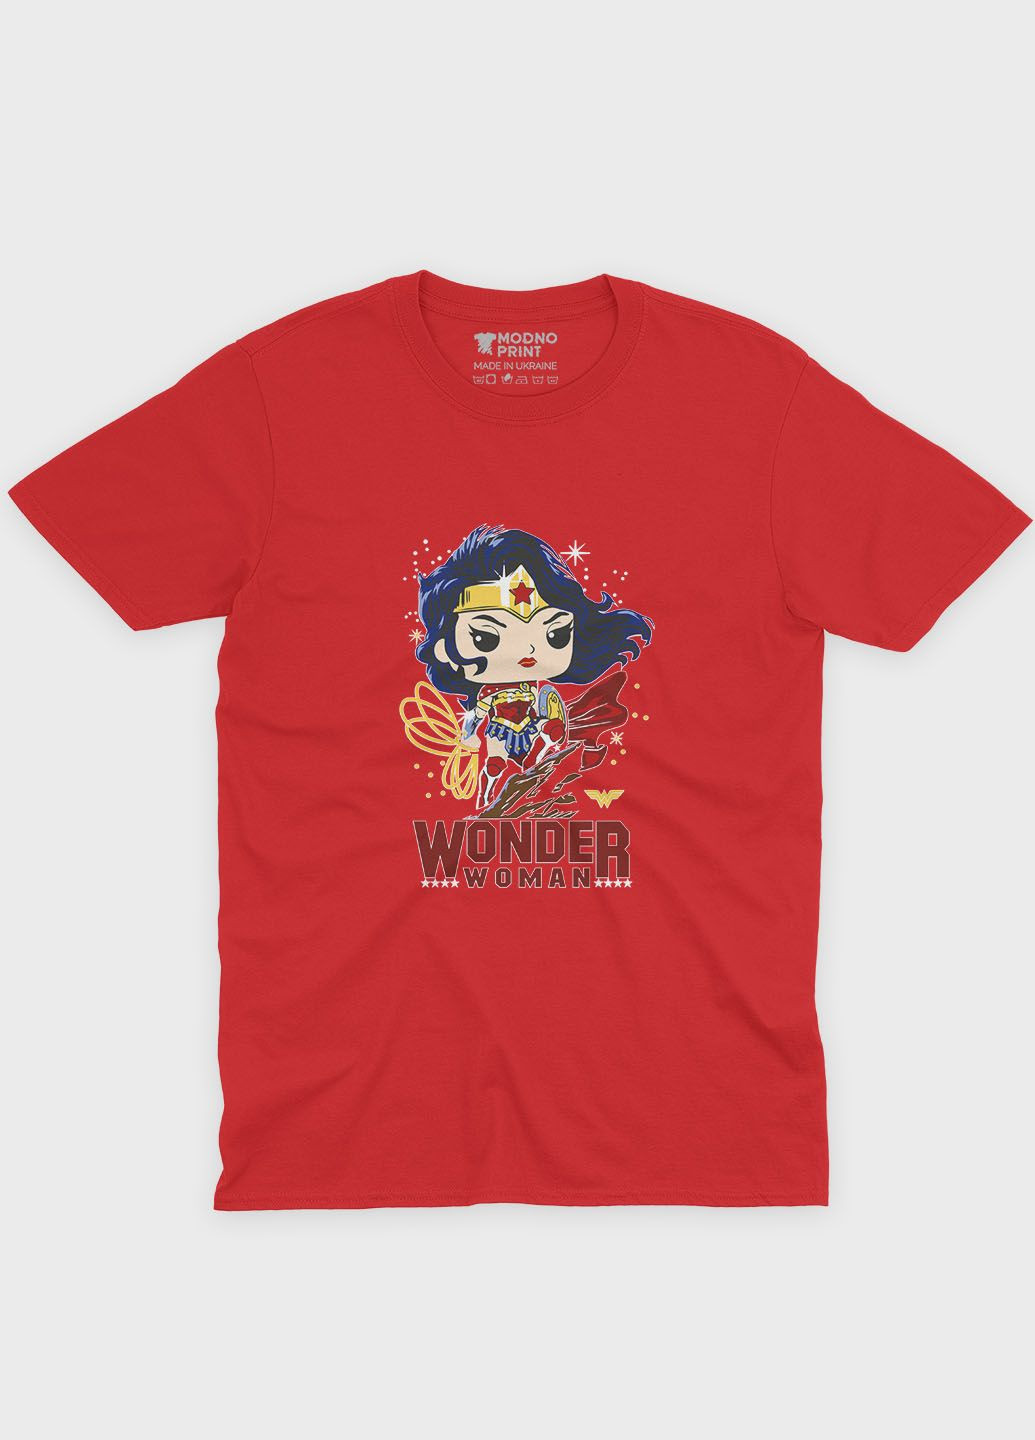 Красная демисезонная футболка для девочки с принтом супергероя - чудо-женщина (ts001-1-sre-006-006-004-g) Modno